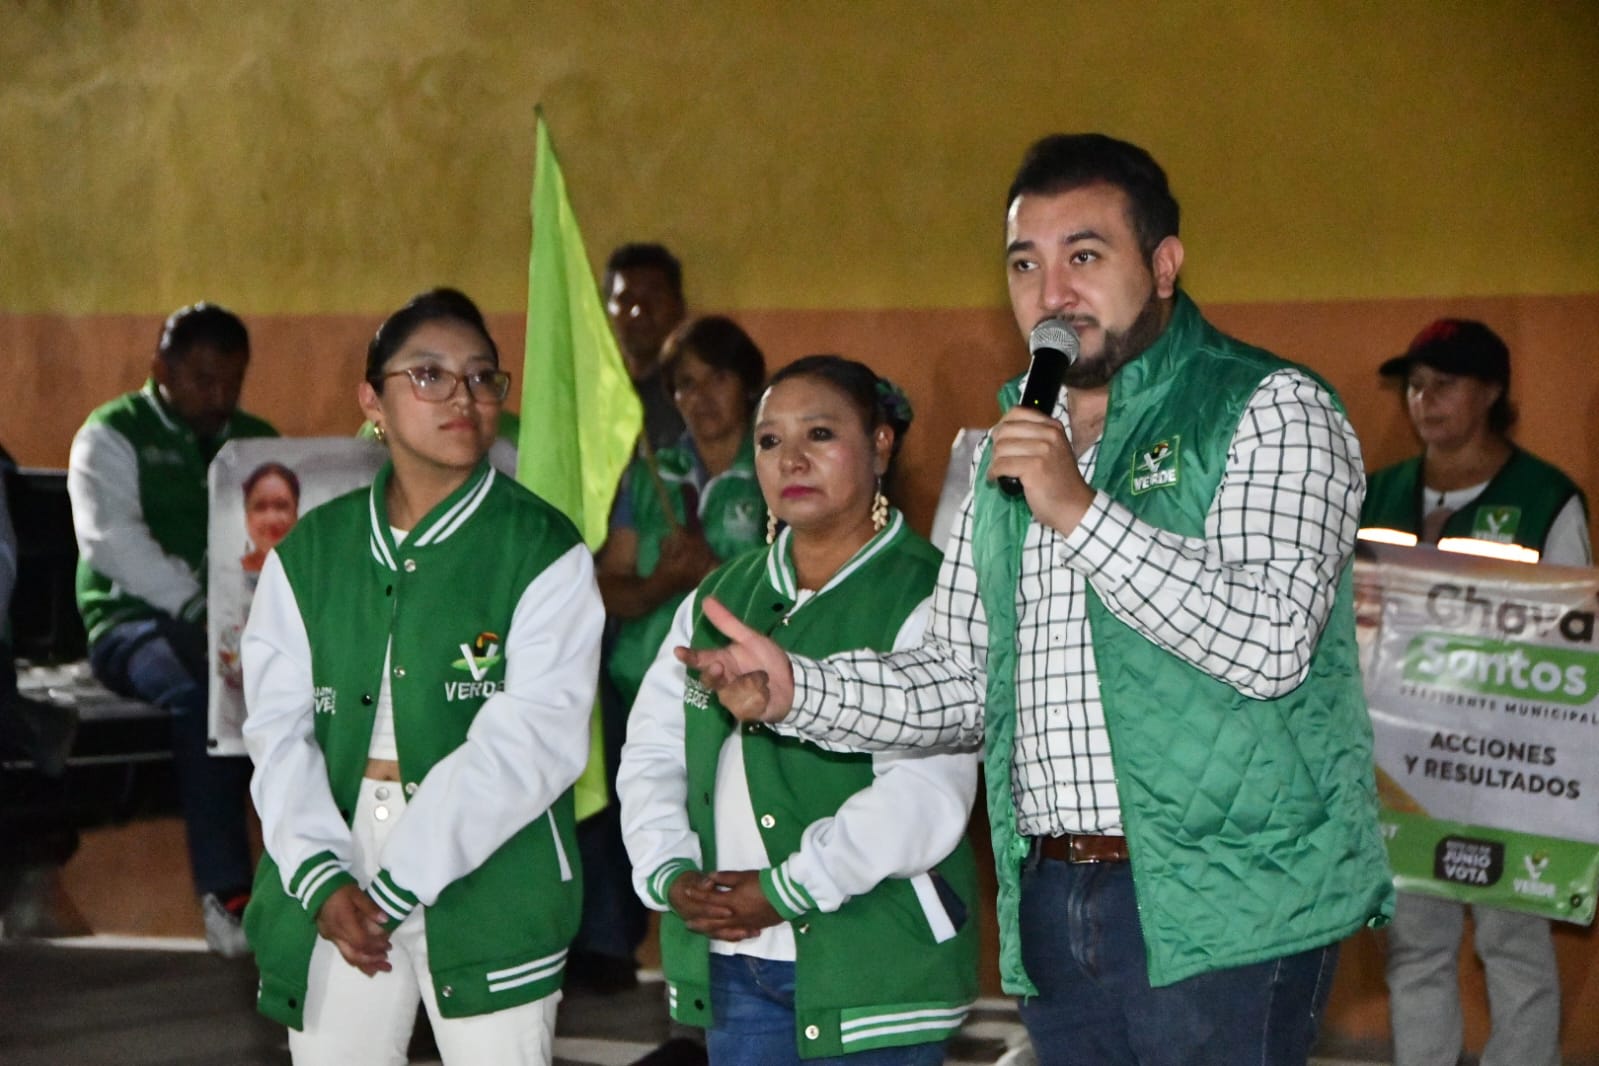 Respalda barrio de San Lucas de Huamantla al candidato del PVEM